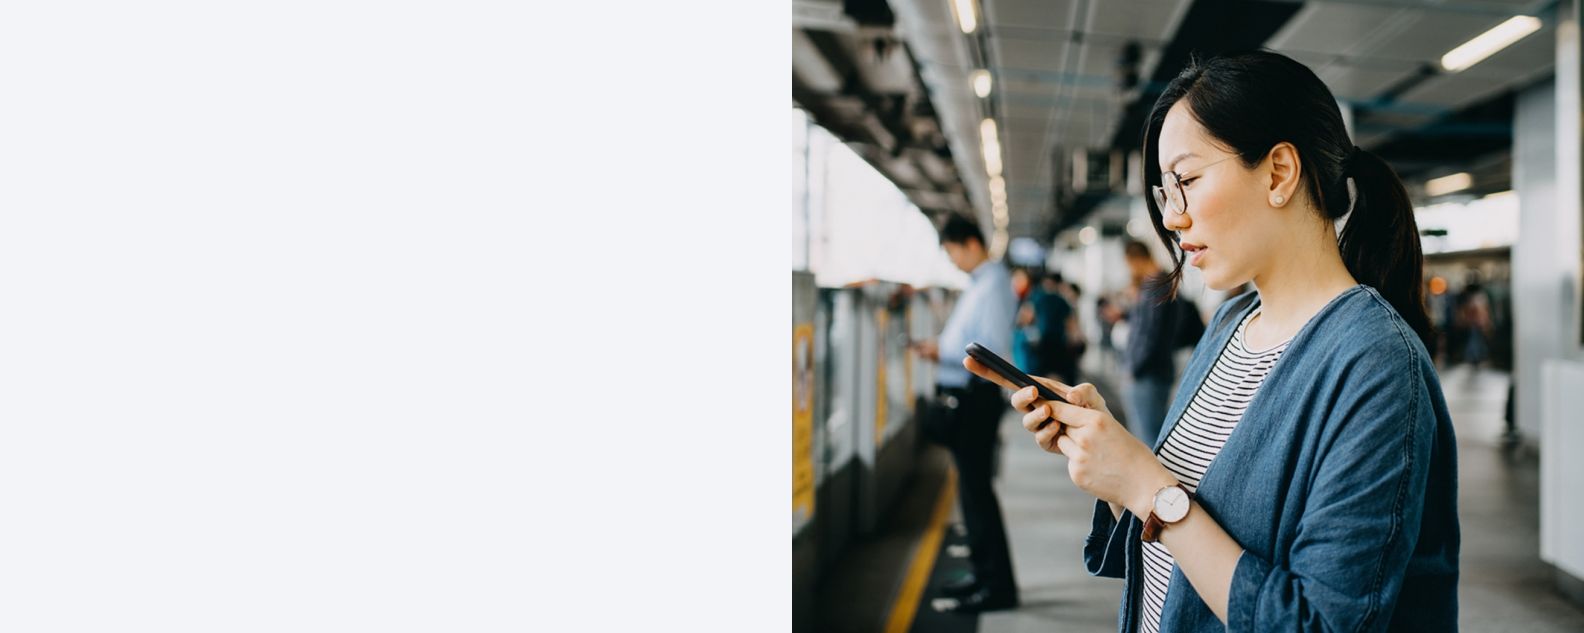 Mujer joven usa un teléfono móvil en la plataforma de la estación de metro